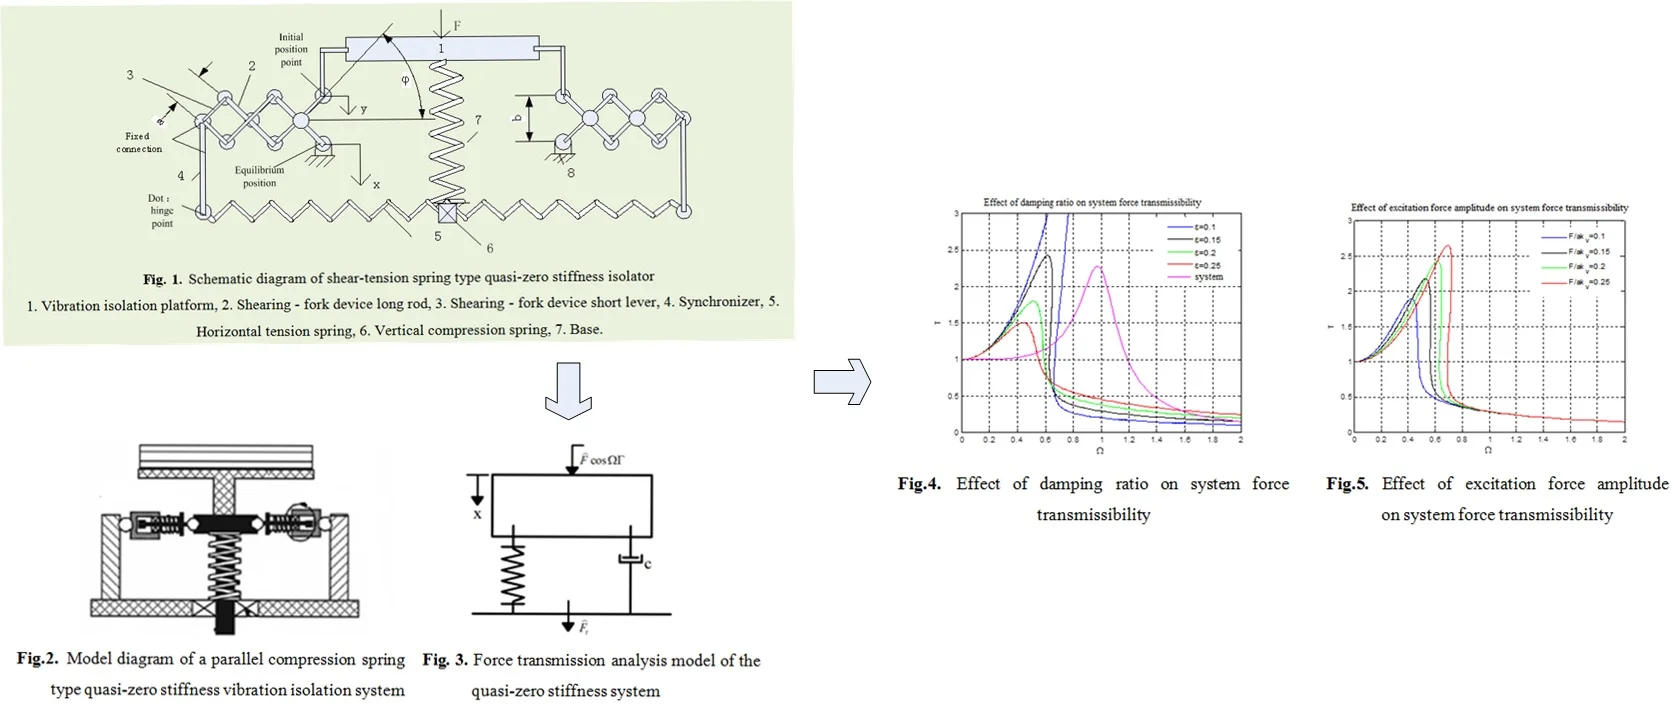 Design and simulation of shear-tension spring-type quasi-zero stiffness isolator